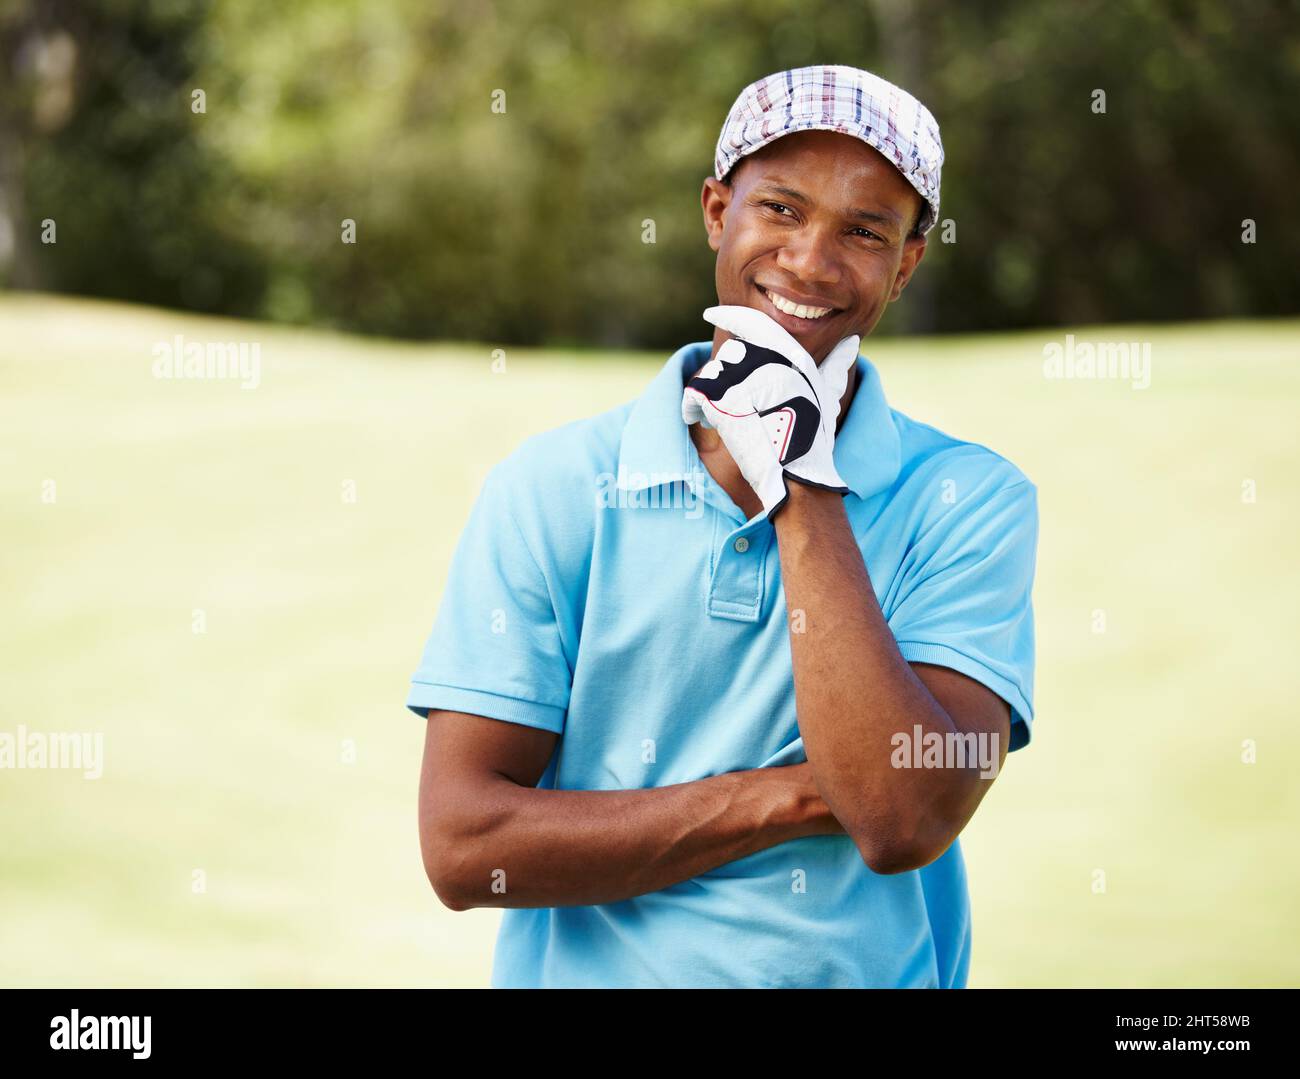 Satisfait de son jeu. Photo d'un pro de golf afro-américain d'apparence positive. Banque D'Images